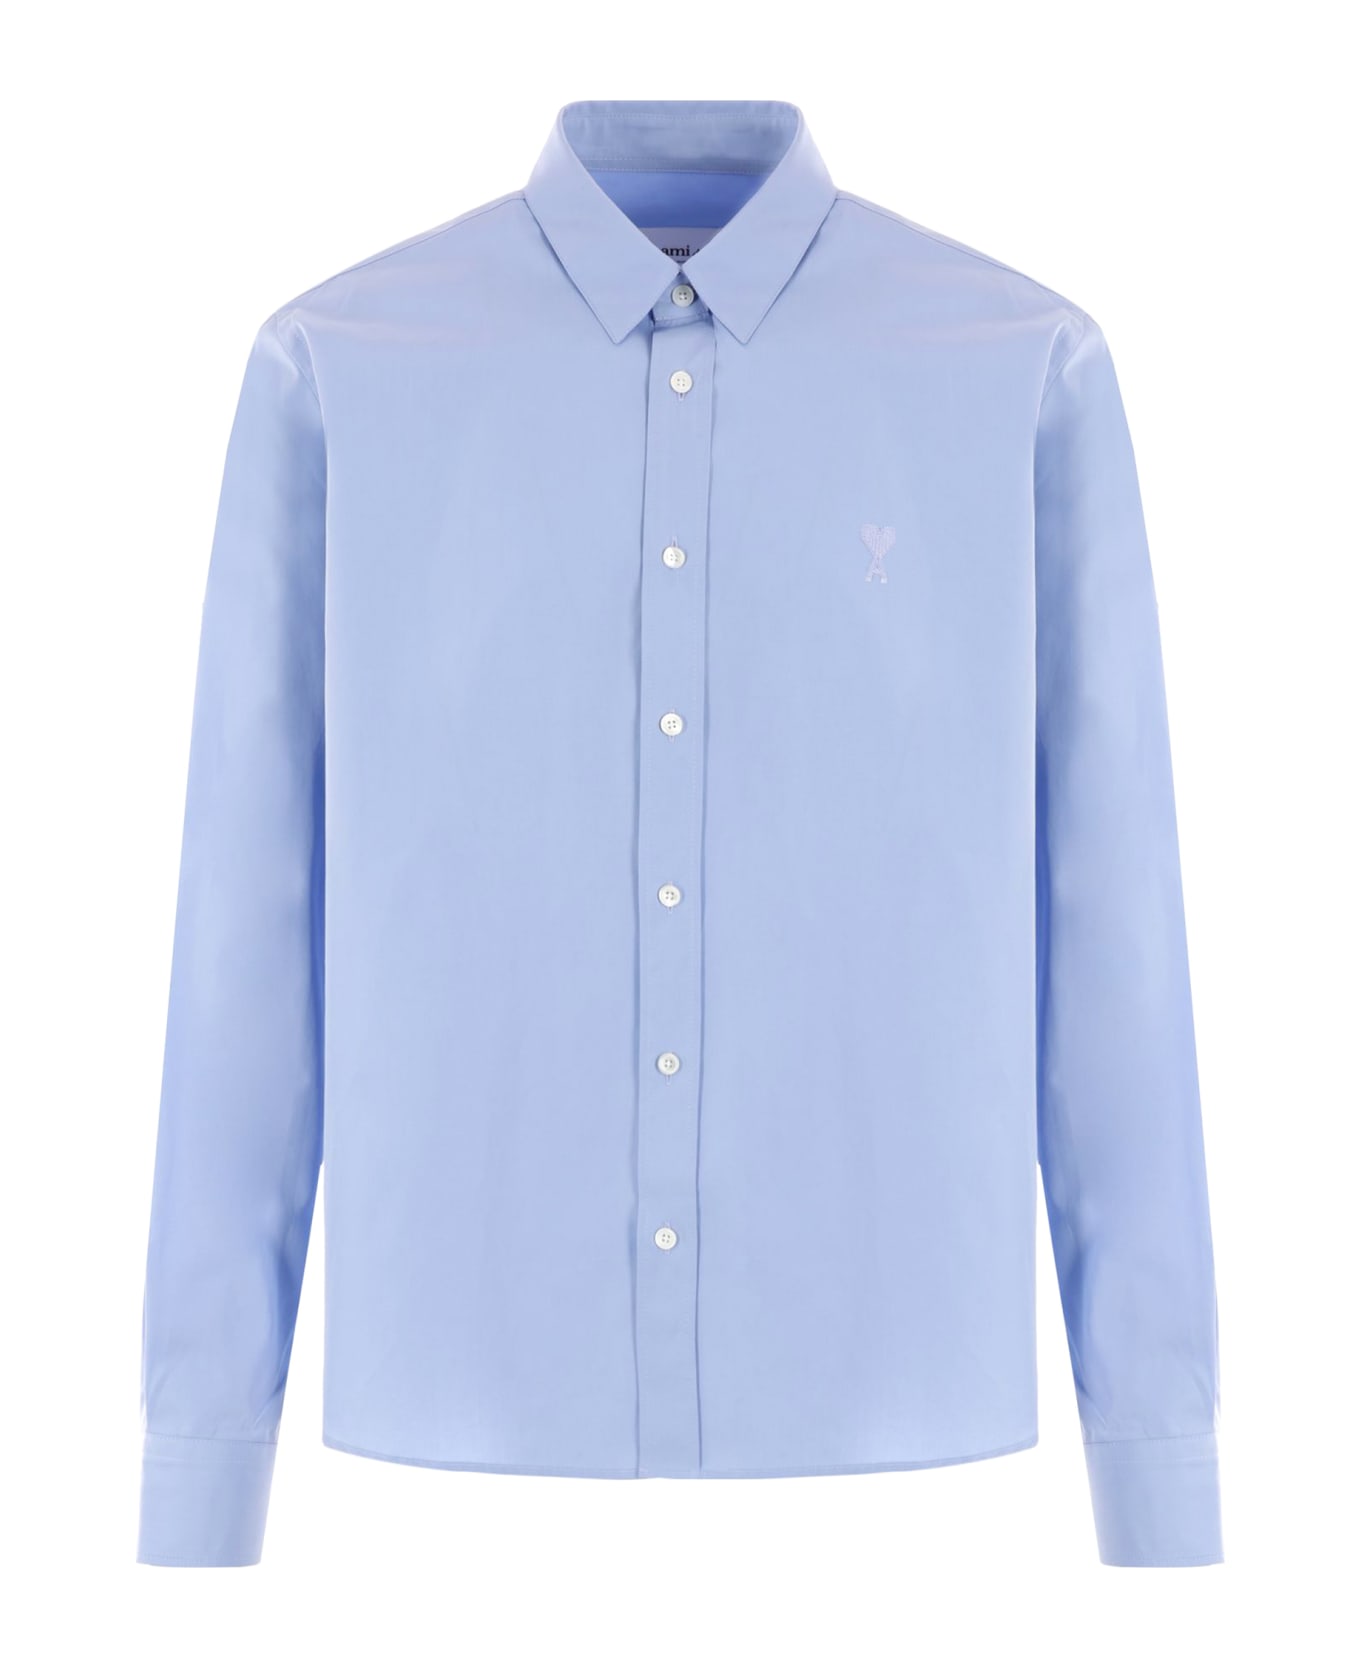 Ami Alexandre Mattiussi Light Blue Cotton Shirt - Blue